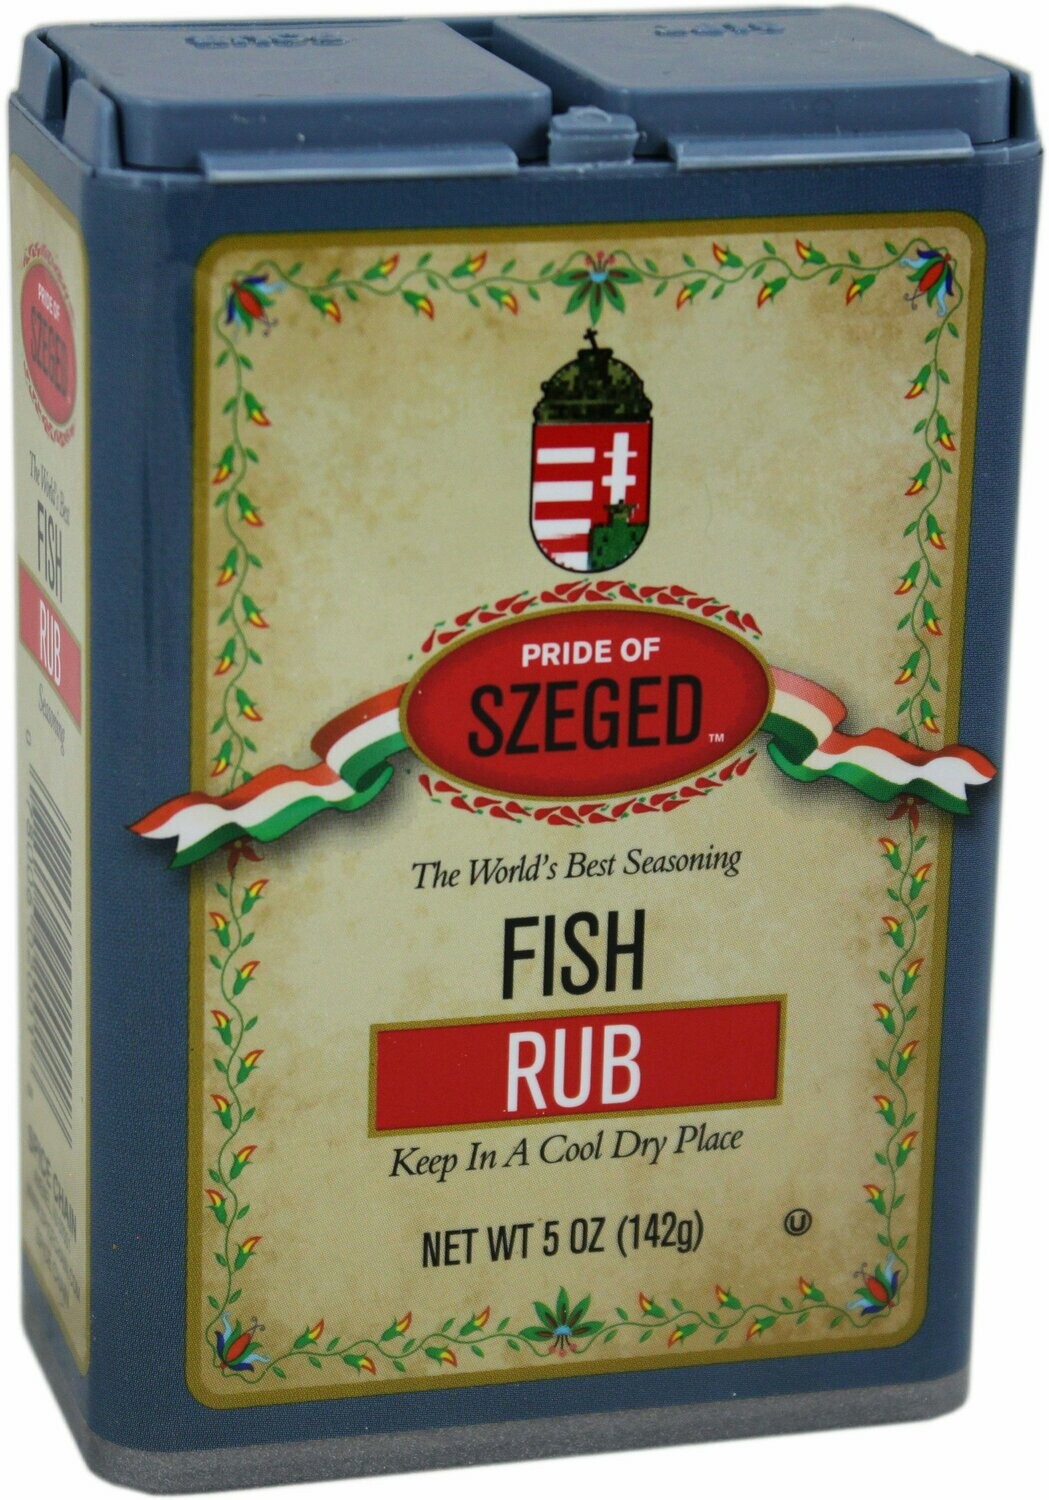 Pride of Szeged Fish Rub Seasoning 5 oz (142g)